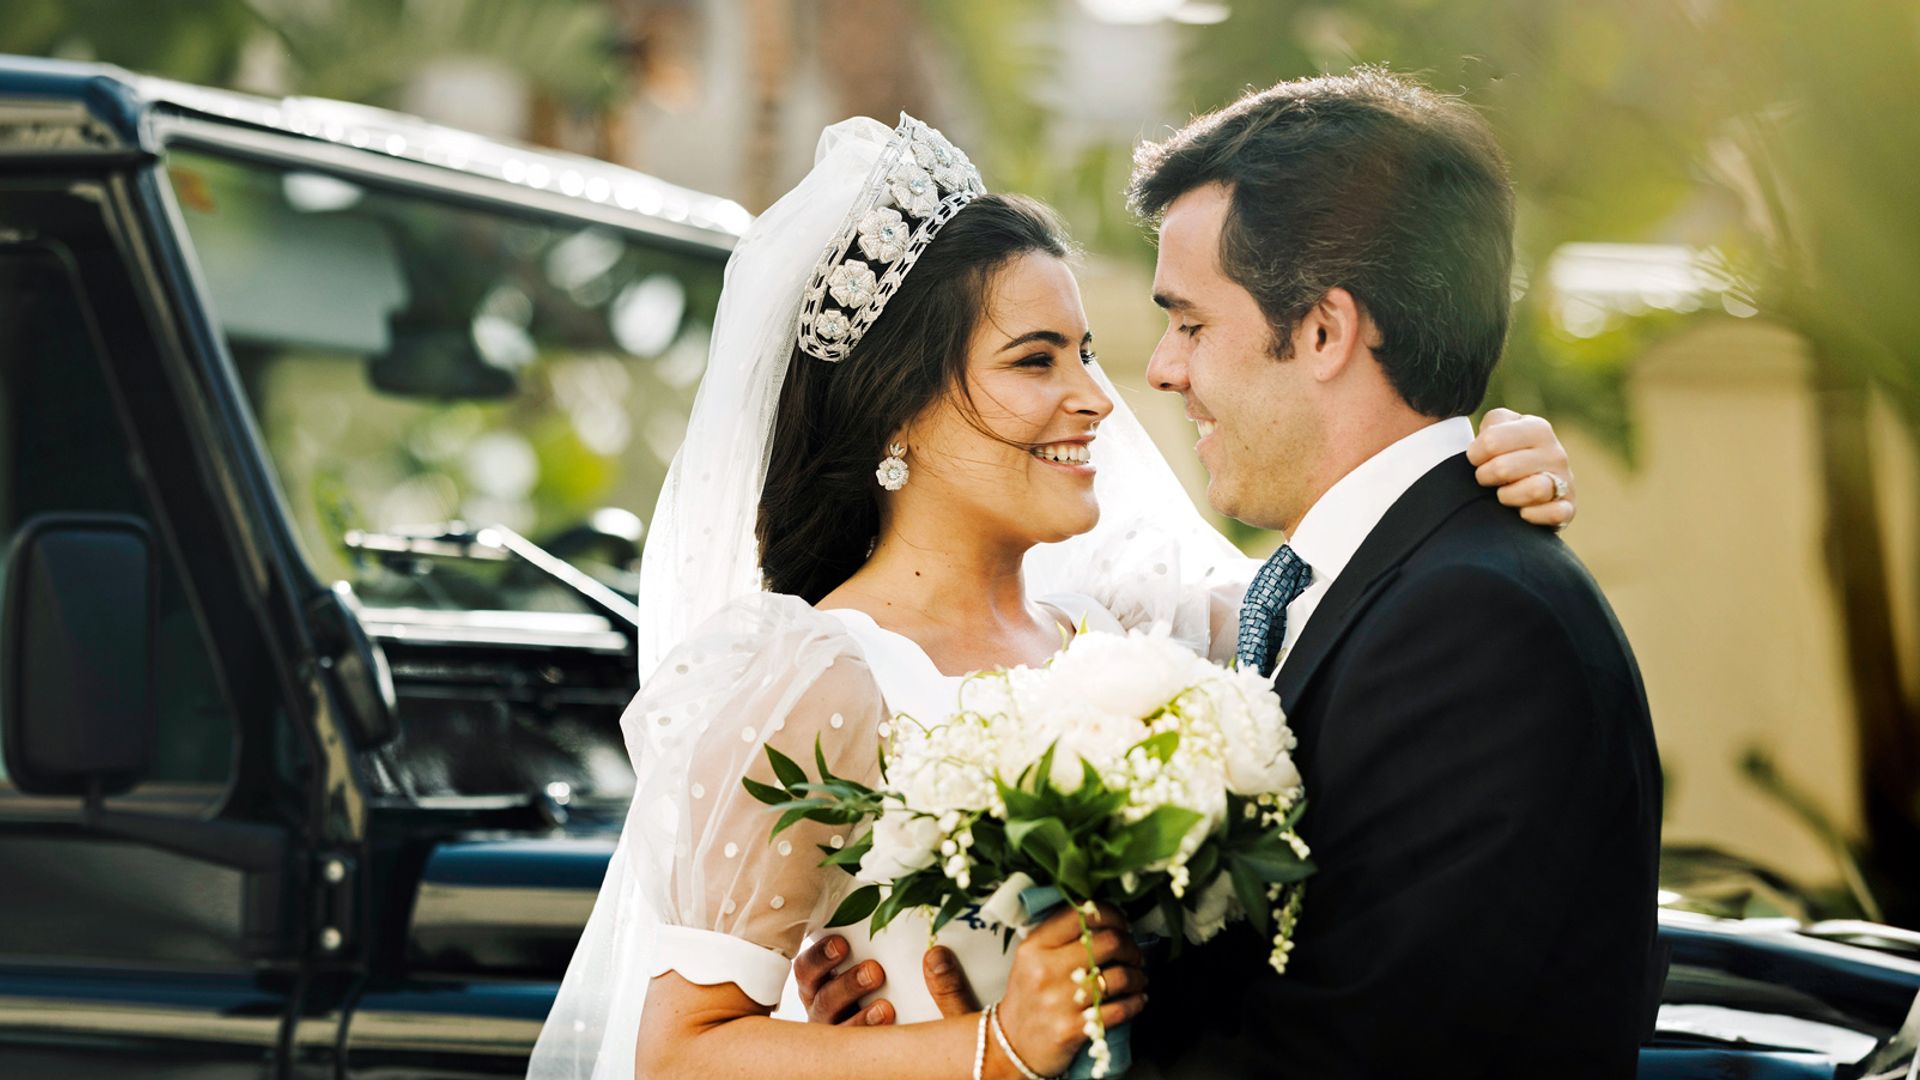 Entramos en la boda de Natalia Santos y Esteban Rivas: la unión de dos grandes sagas empresariales